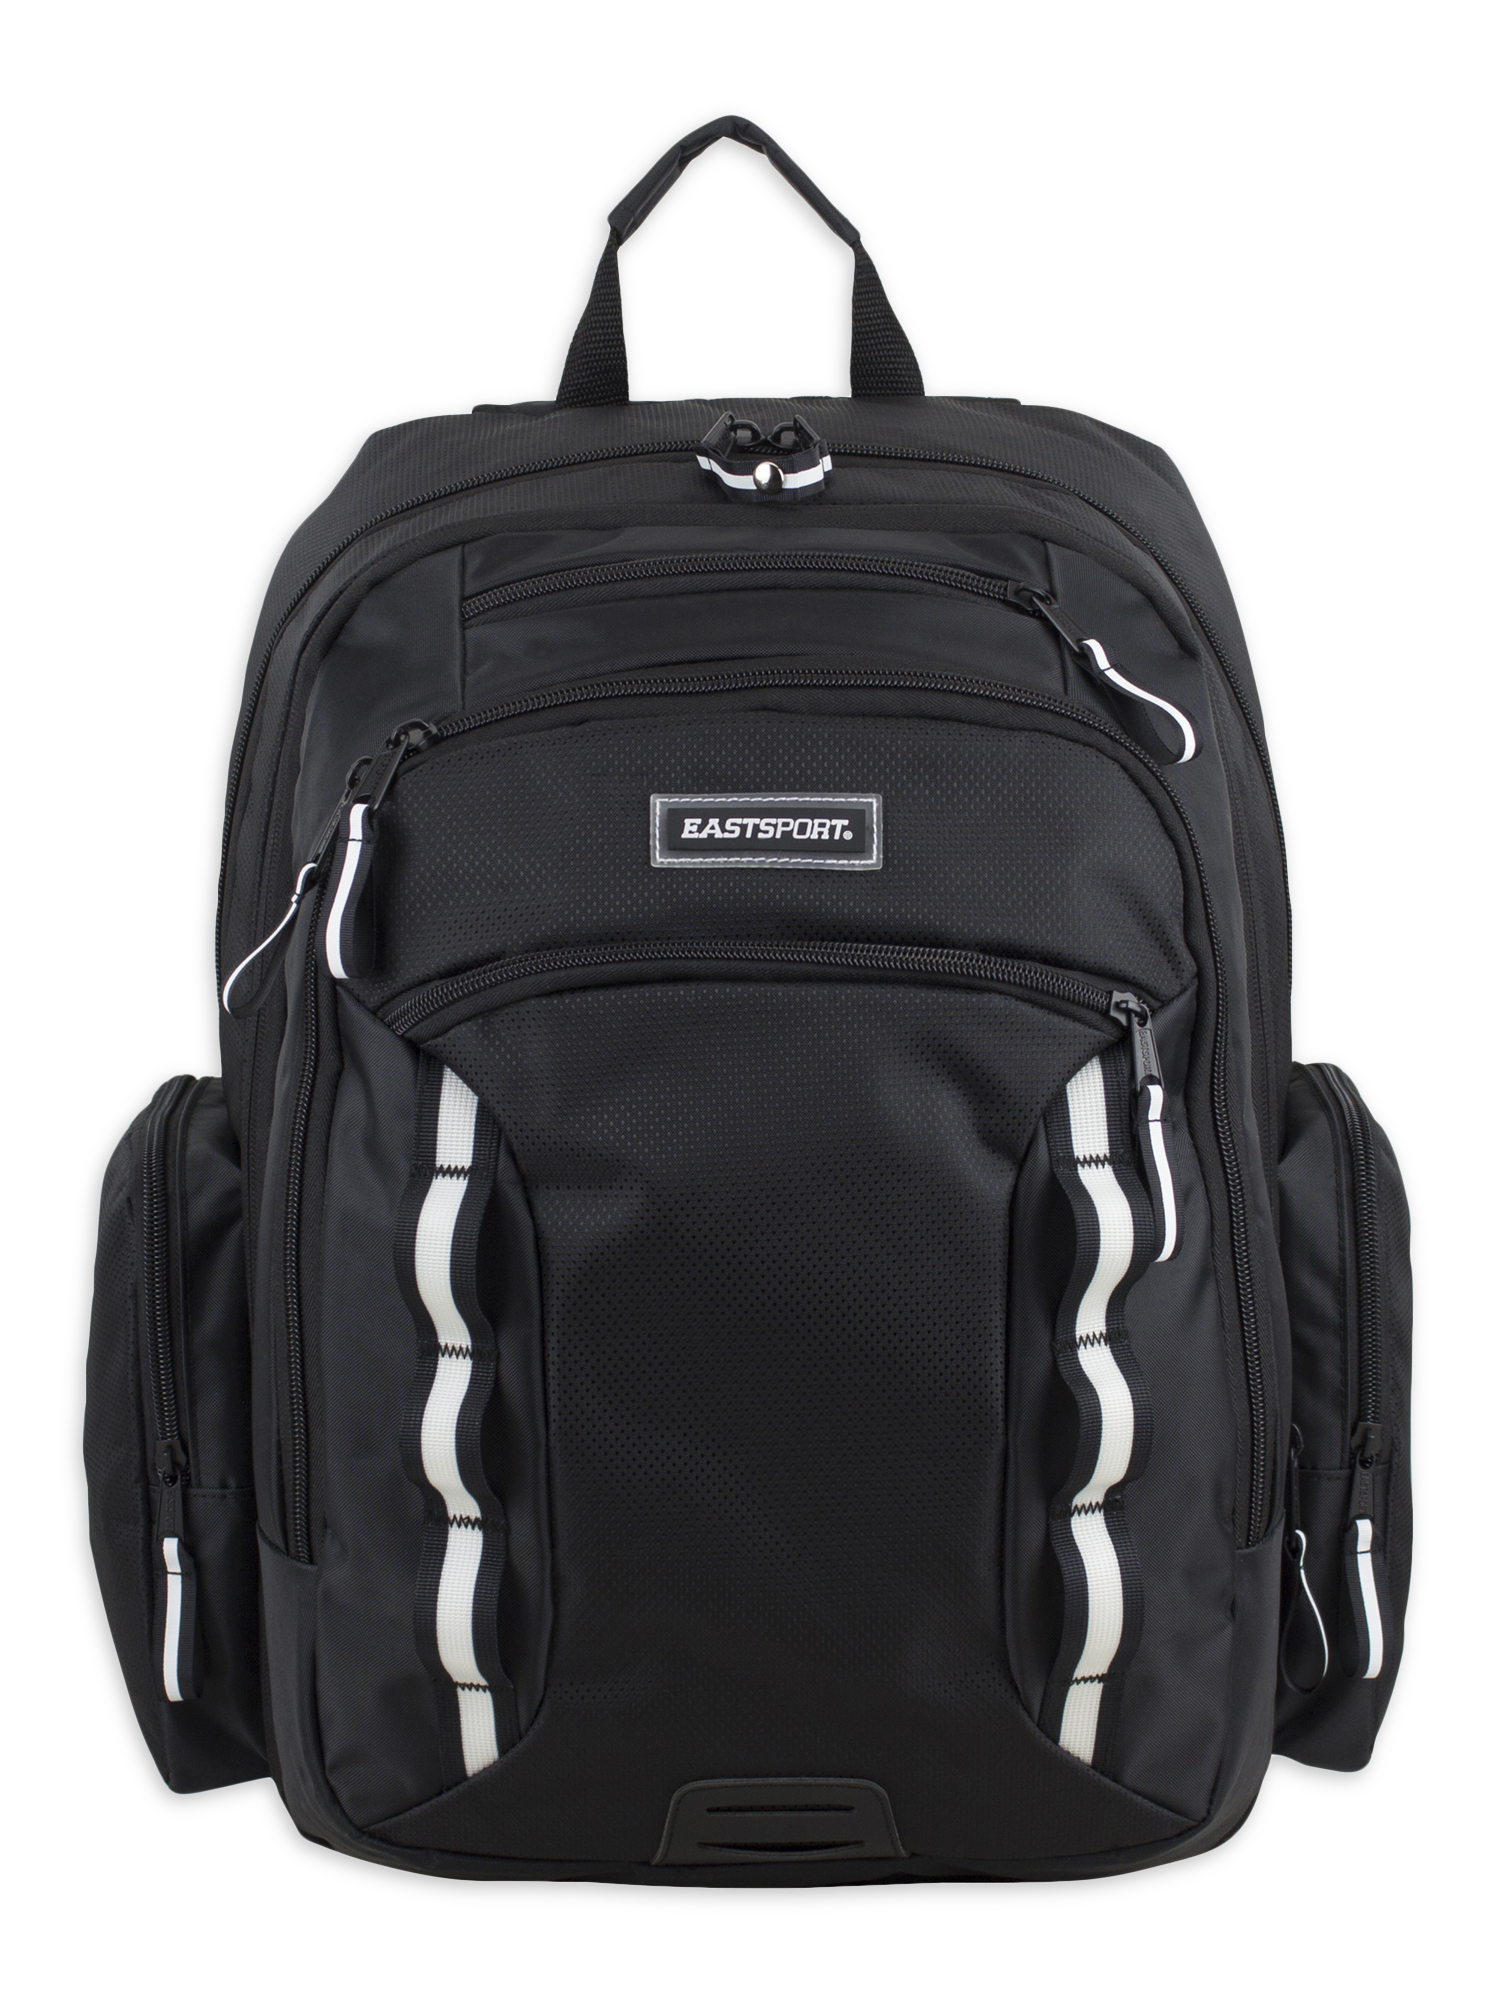 Eastsport Odyssey Backpack, Black - image 1 of 7